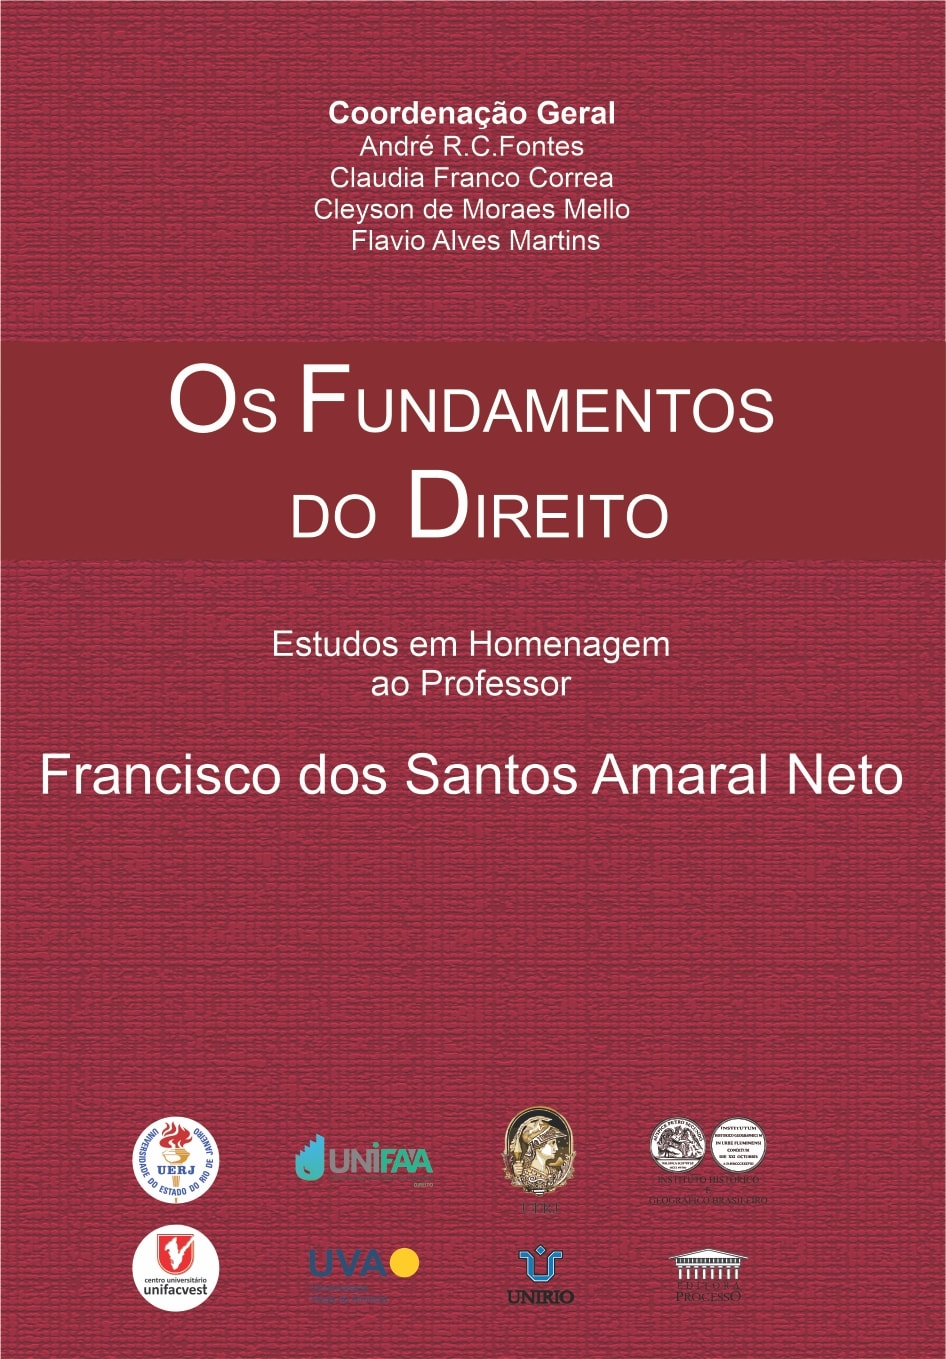 OS FUNDAMENTOS DO DIREITO - Estudos em Homenagem ao Professor, Francisco dos Santos Amaral Neto